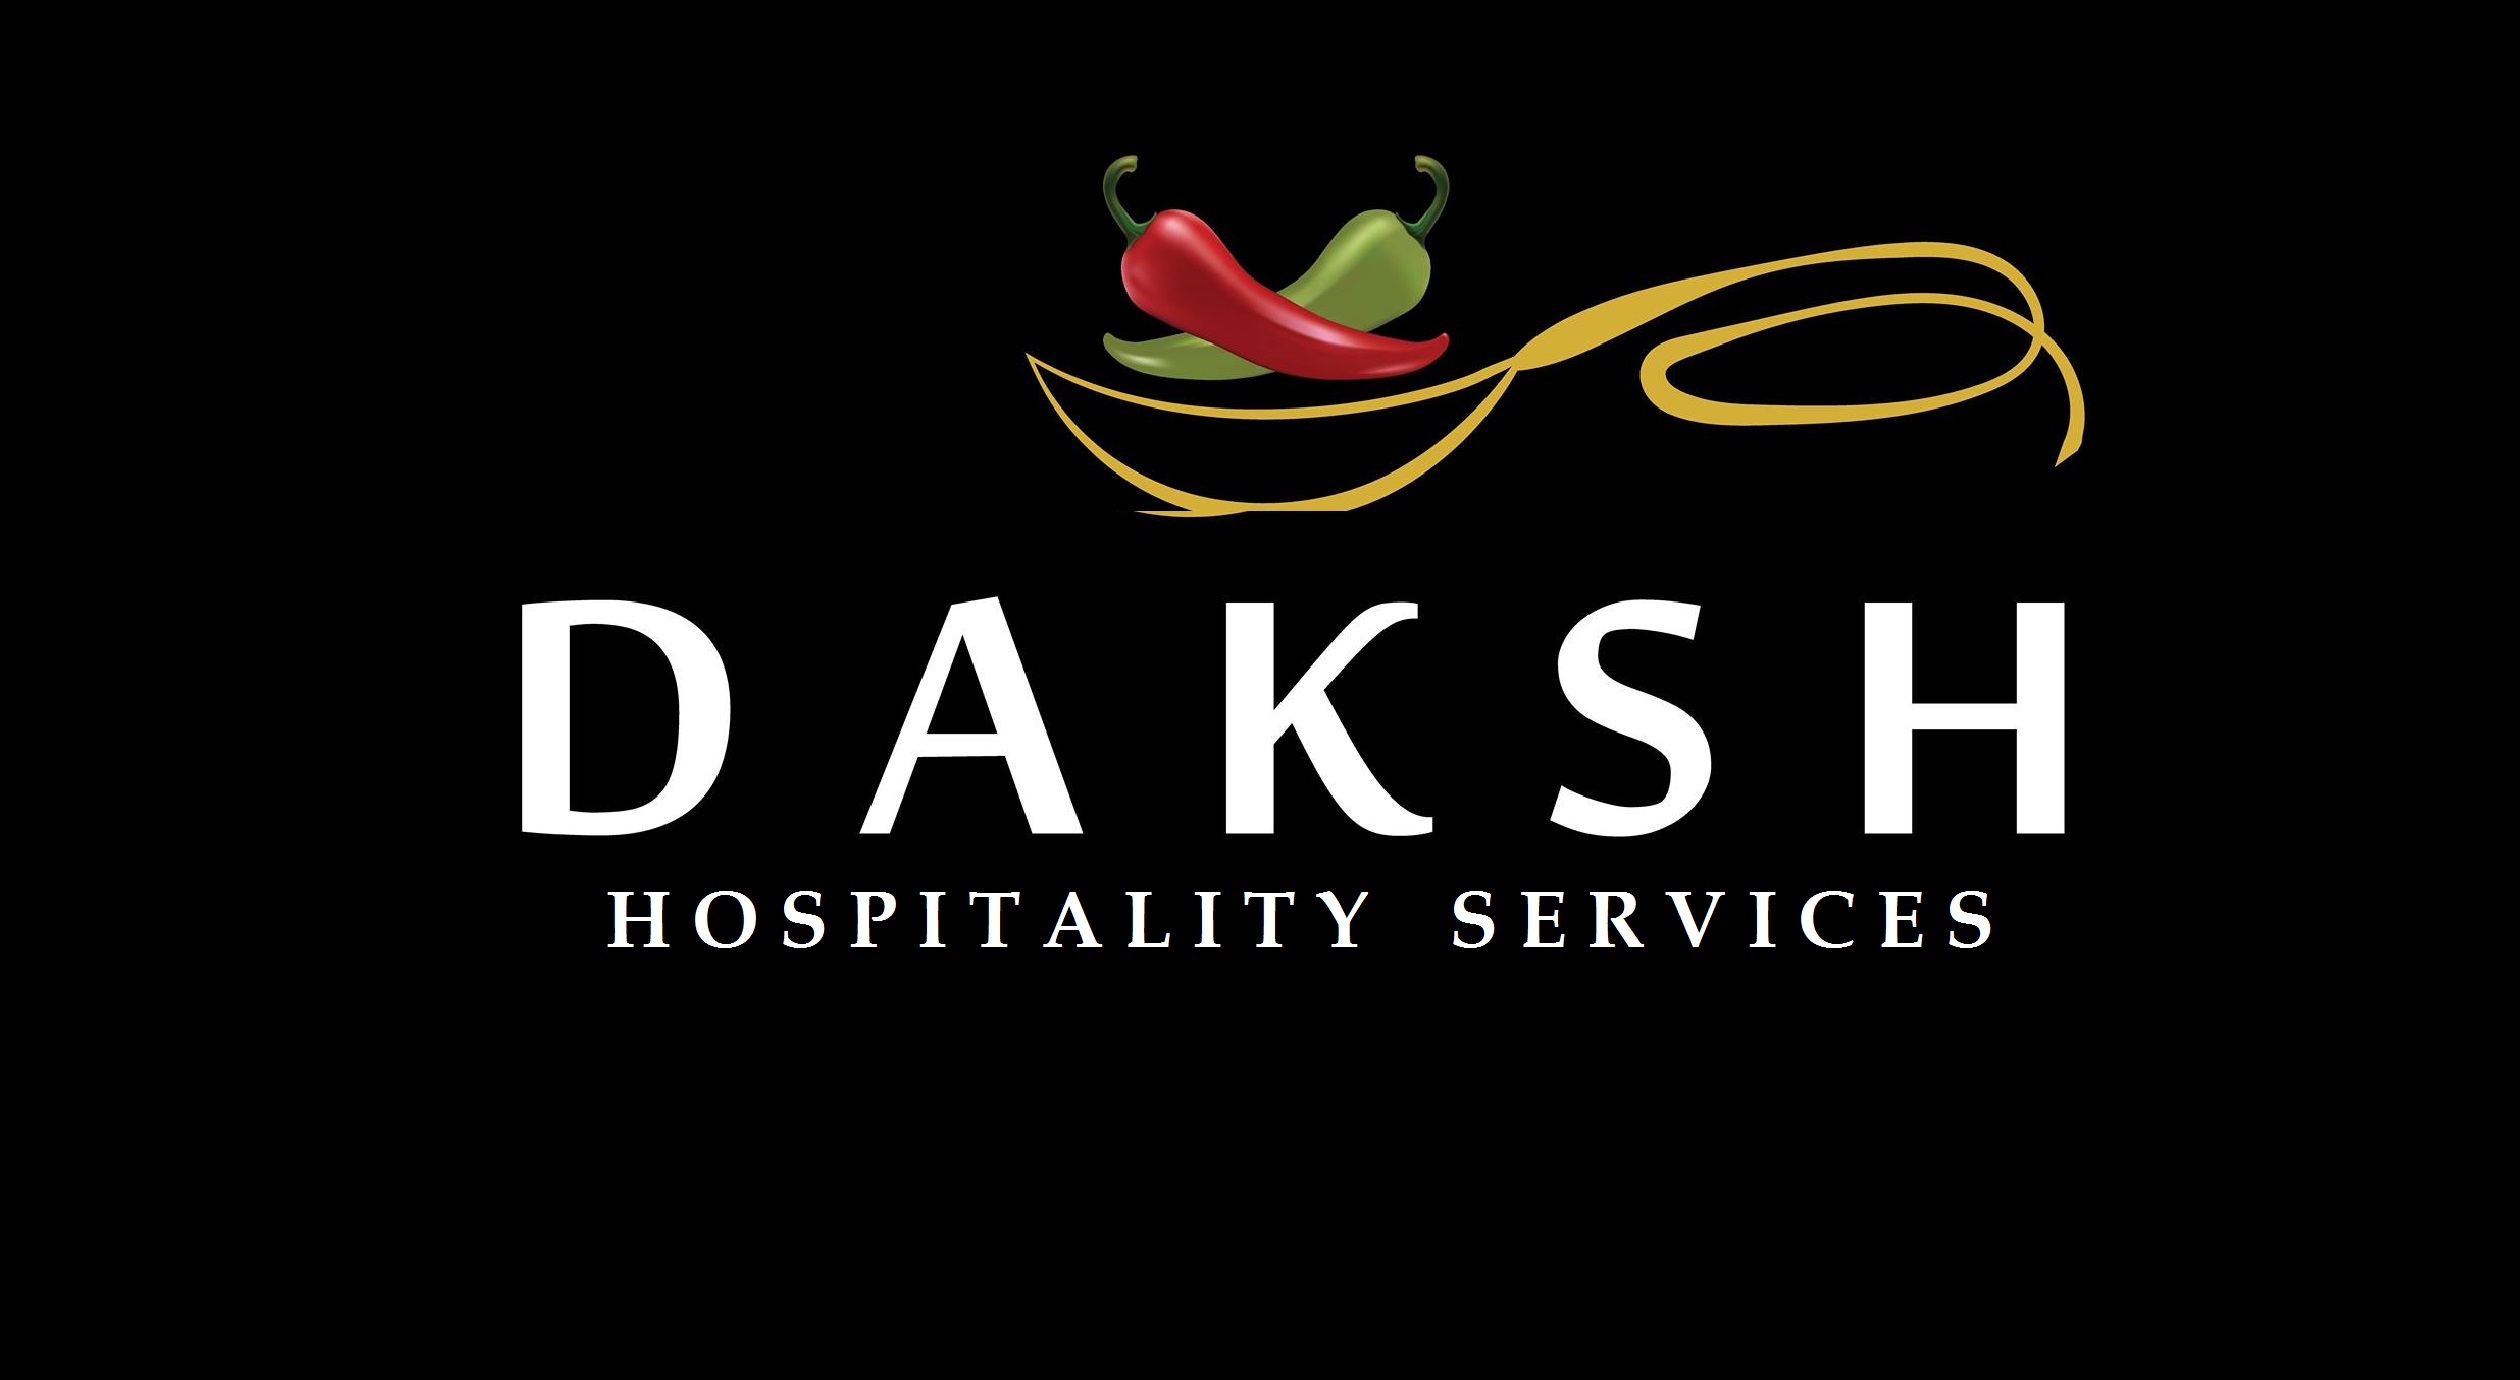 DakshIIT - Daksh Institute of Innovation and Technology